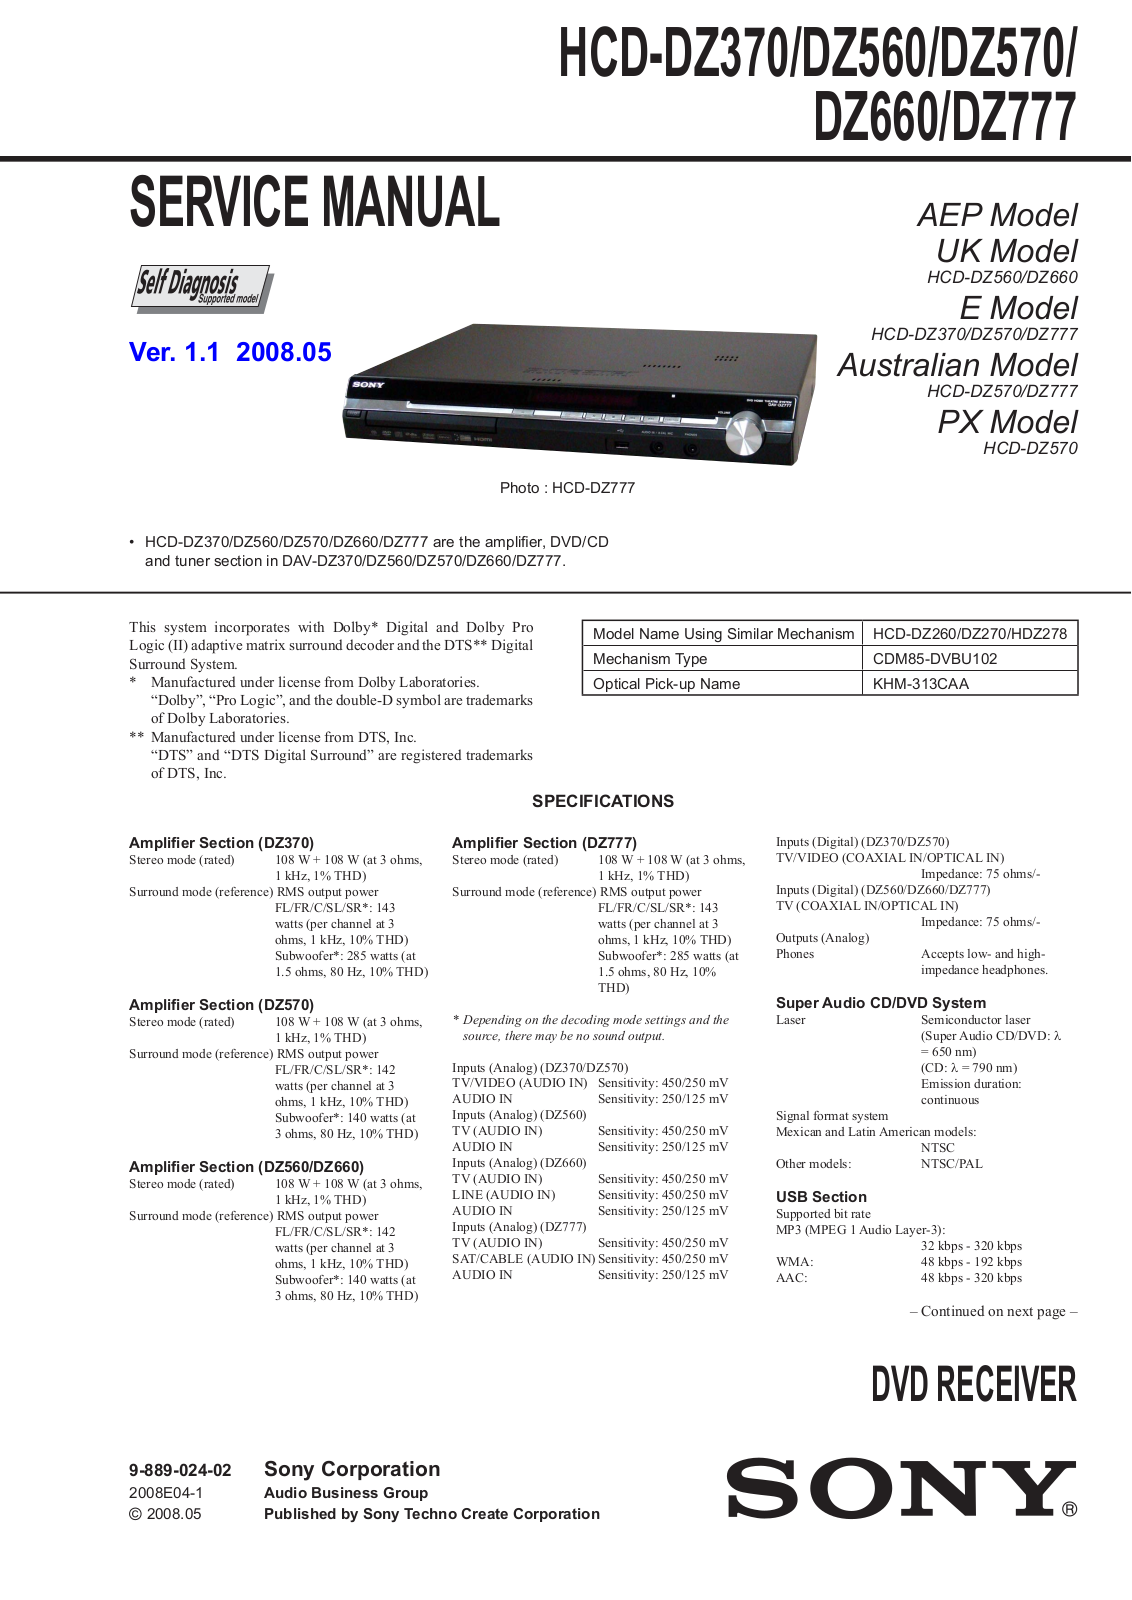 Sony HCDDZ-560, HCDDZ-370, HCDDZ-570, HCDDZ-660, HCDDZ-777 Service manual